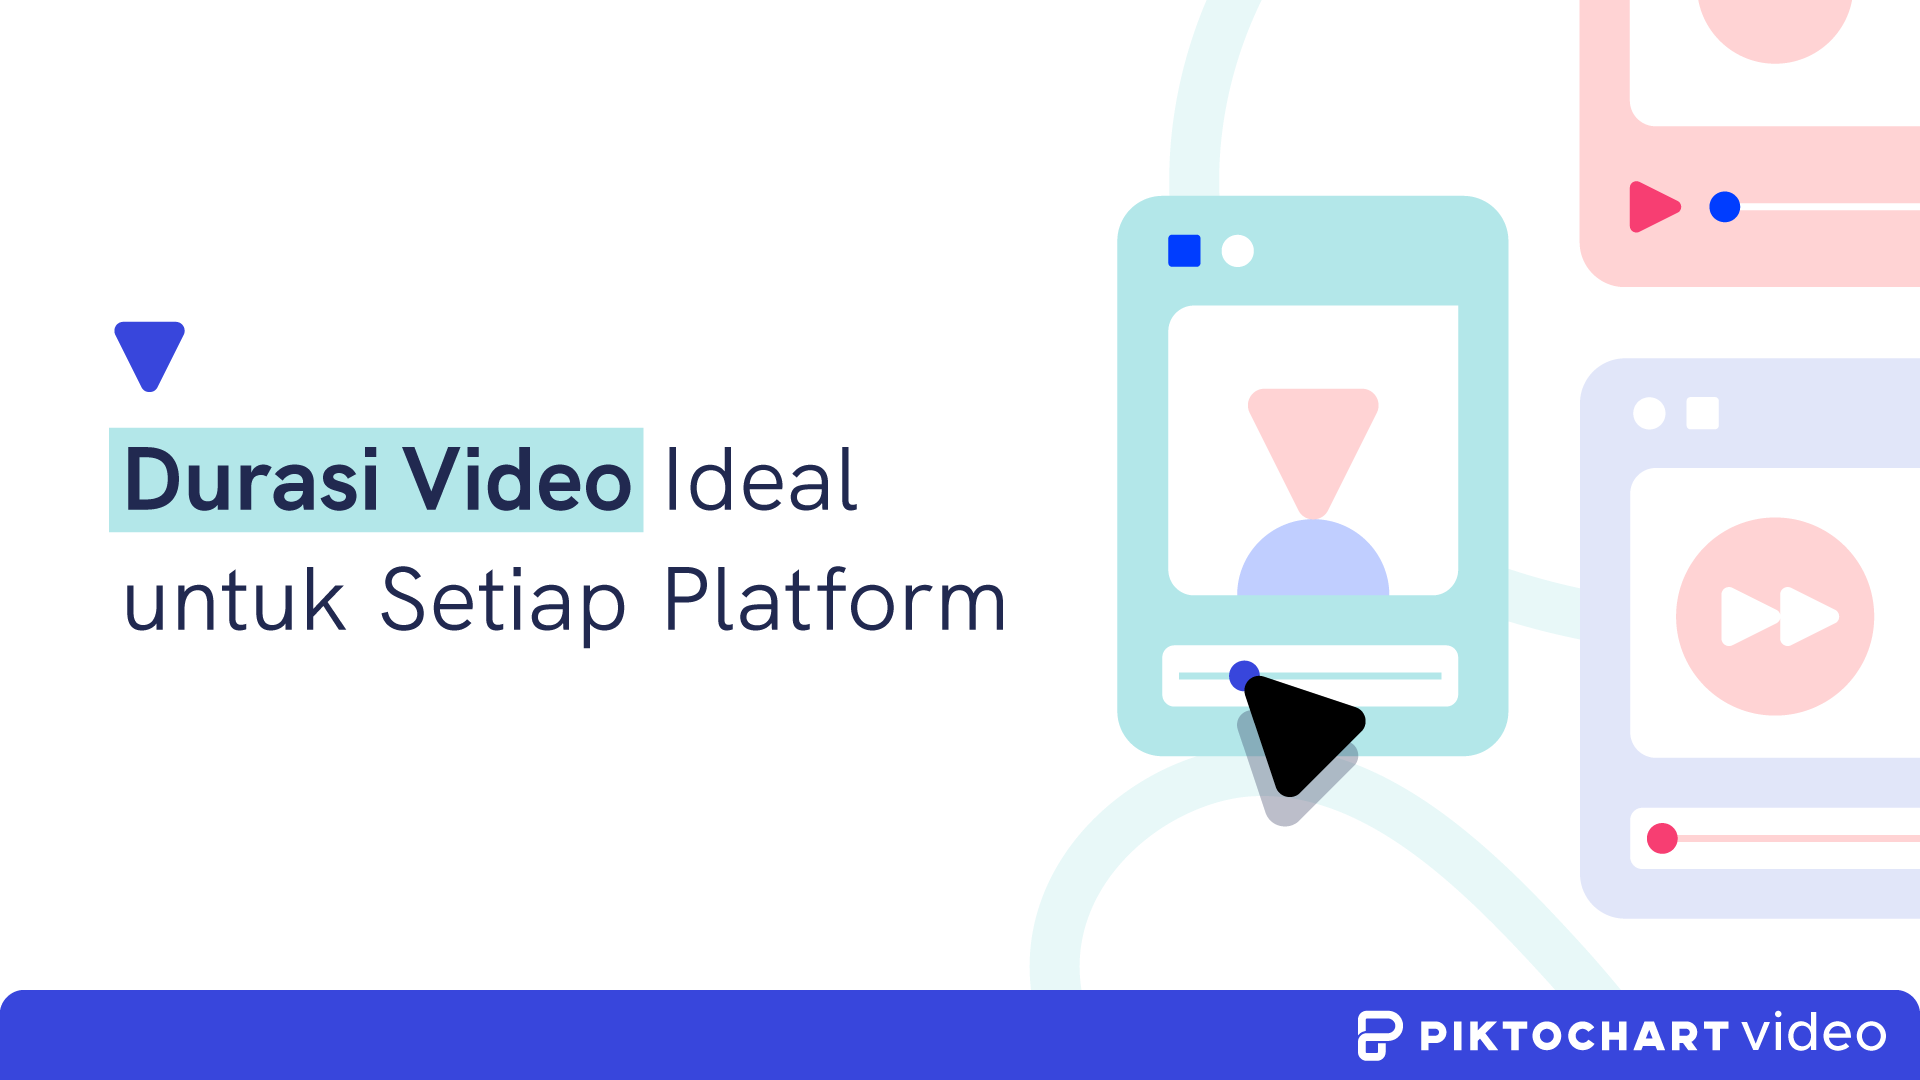 durasi video ideal untuk setiap platform